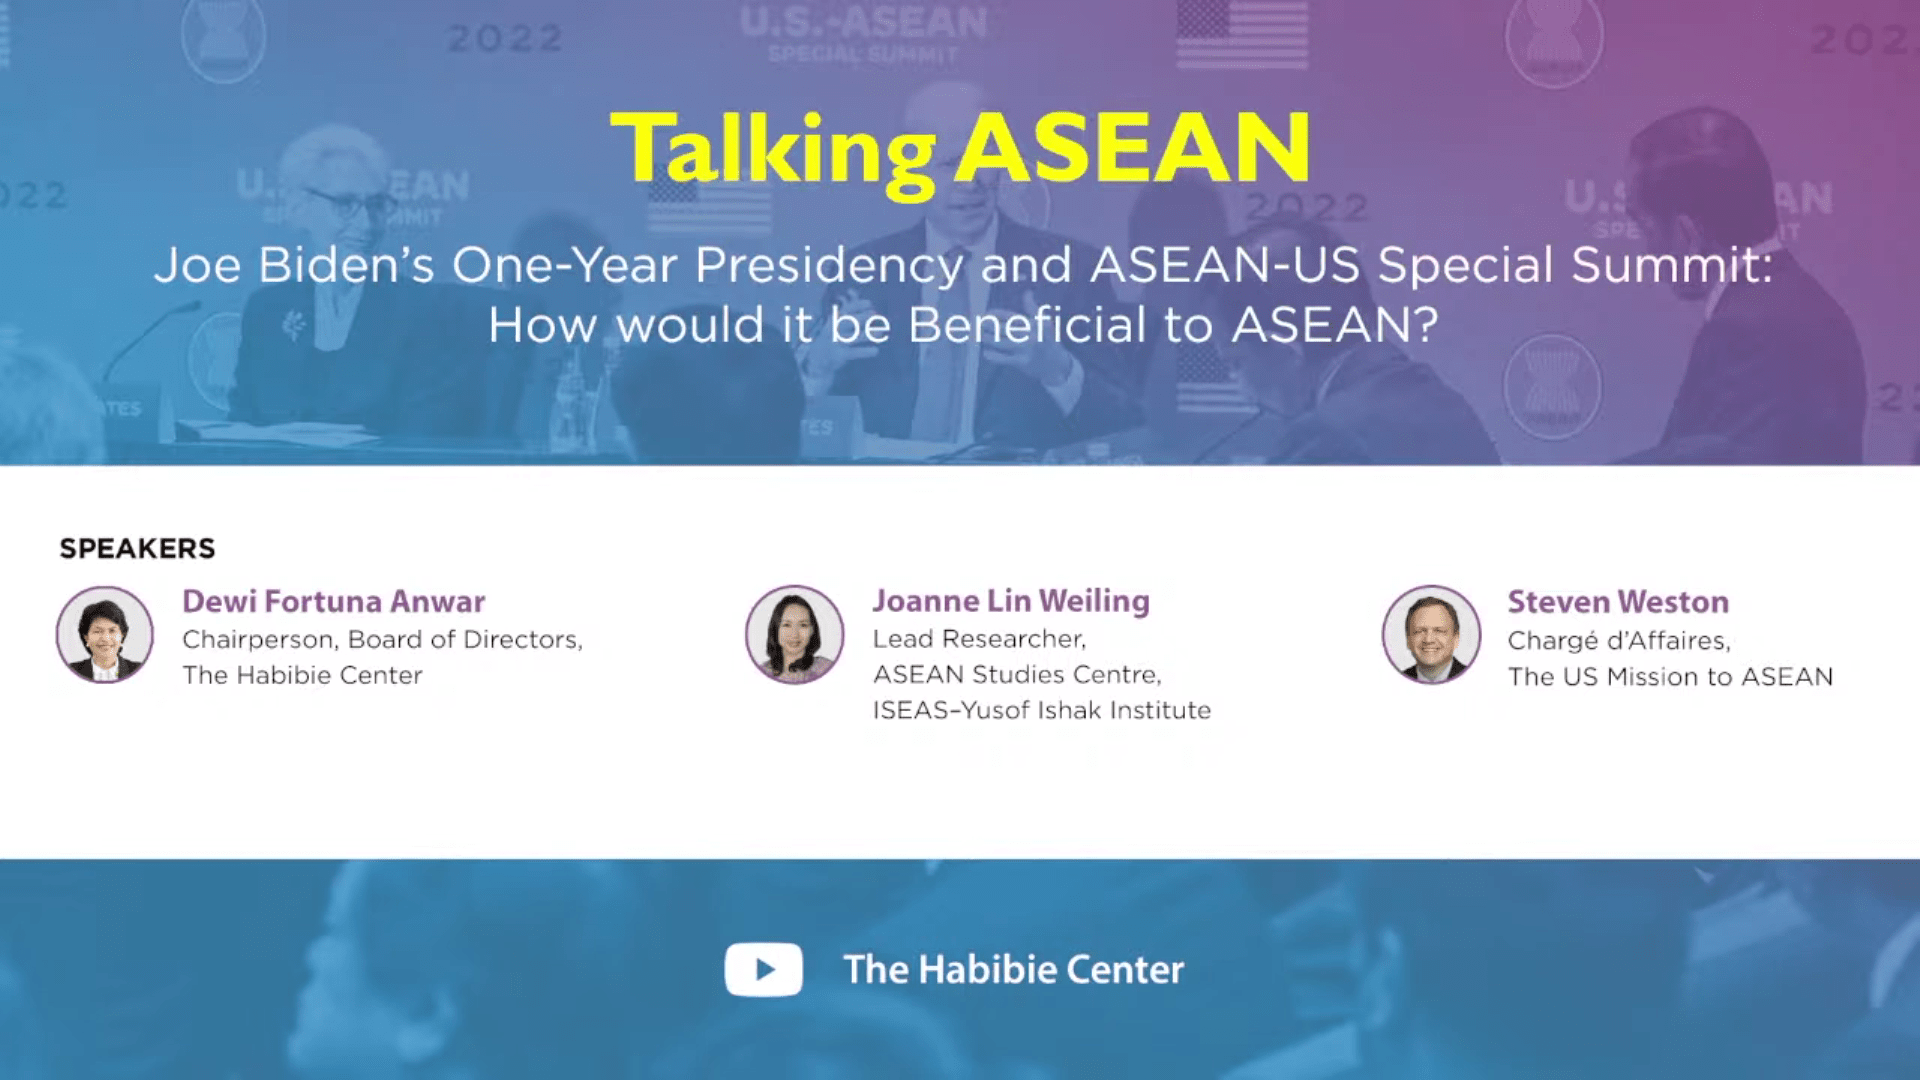 Talking ASEAN on “Joe Biden's One-Year Presidency and ASEAN-US Special Summit”